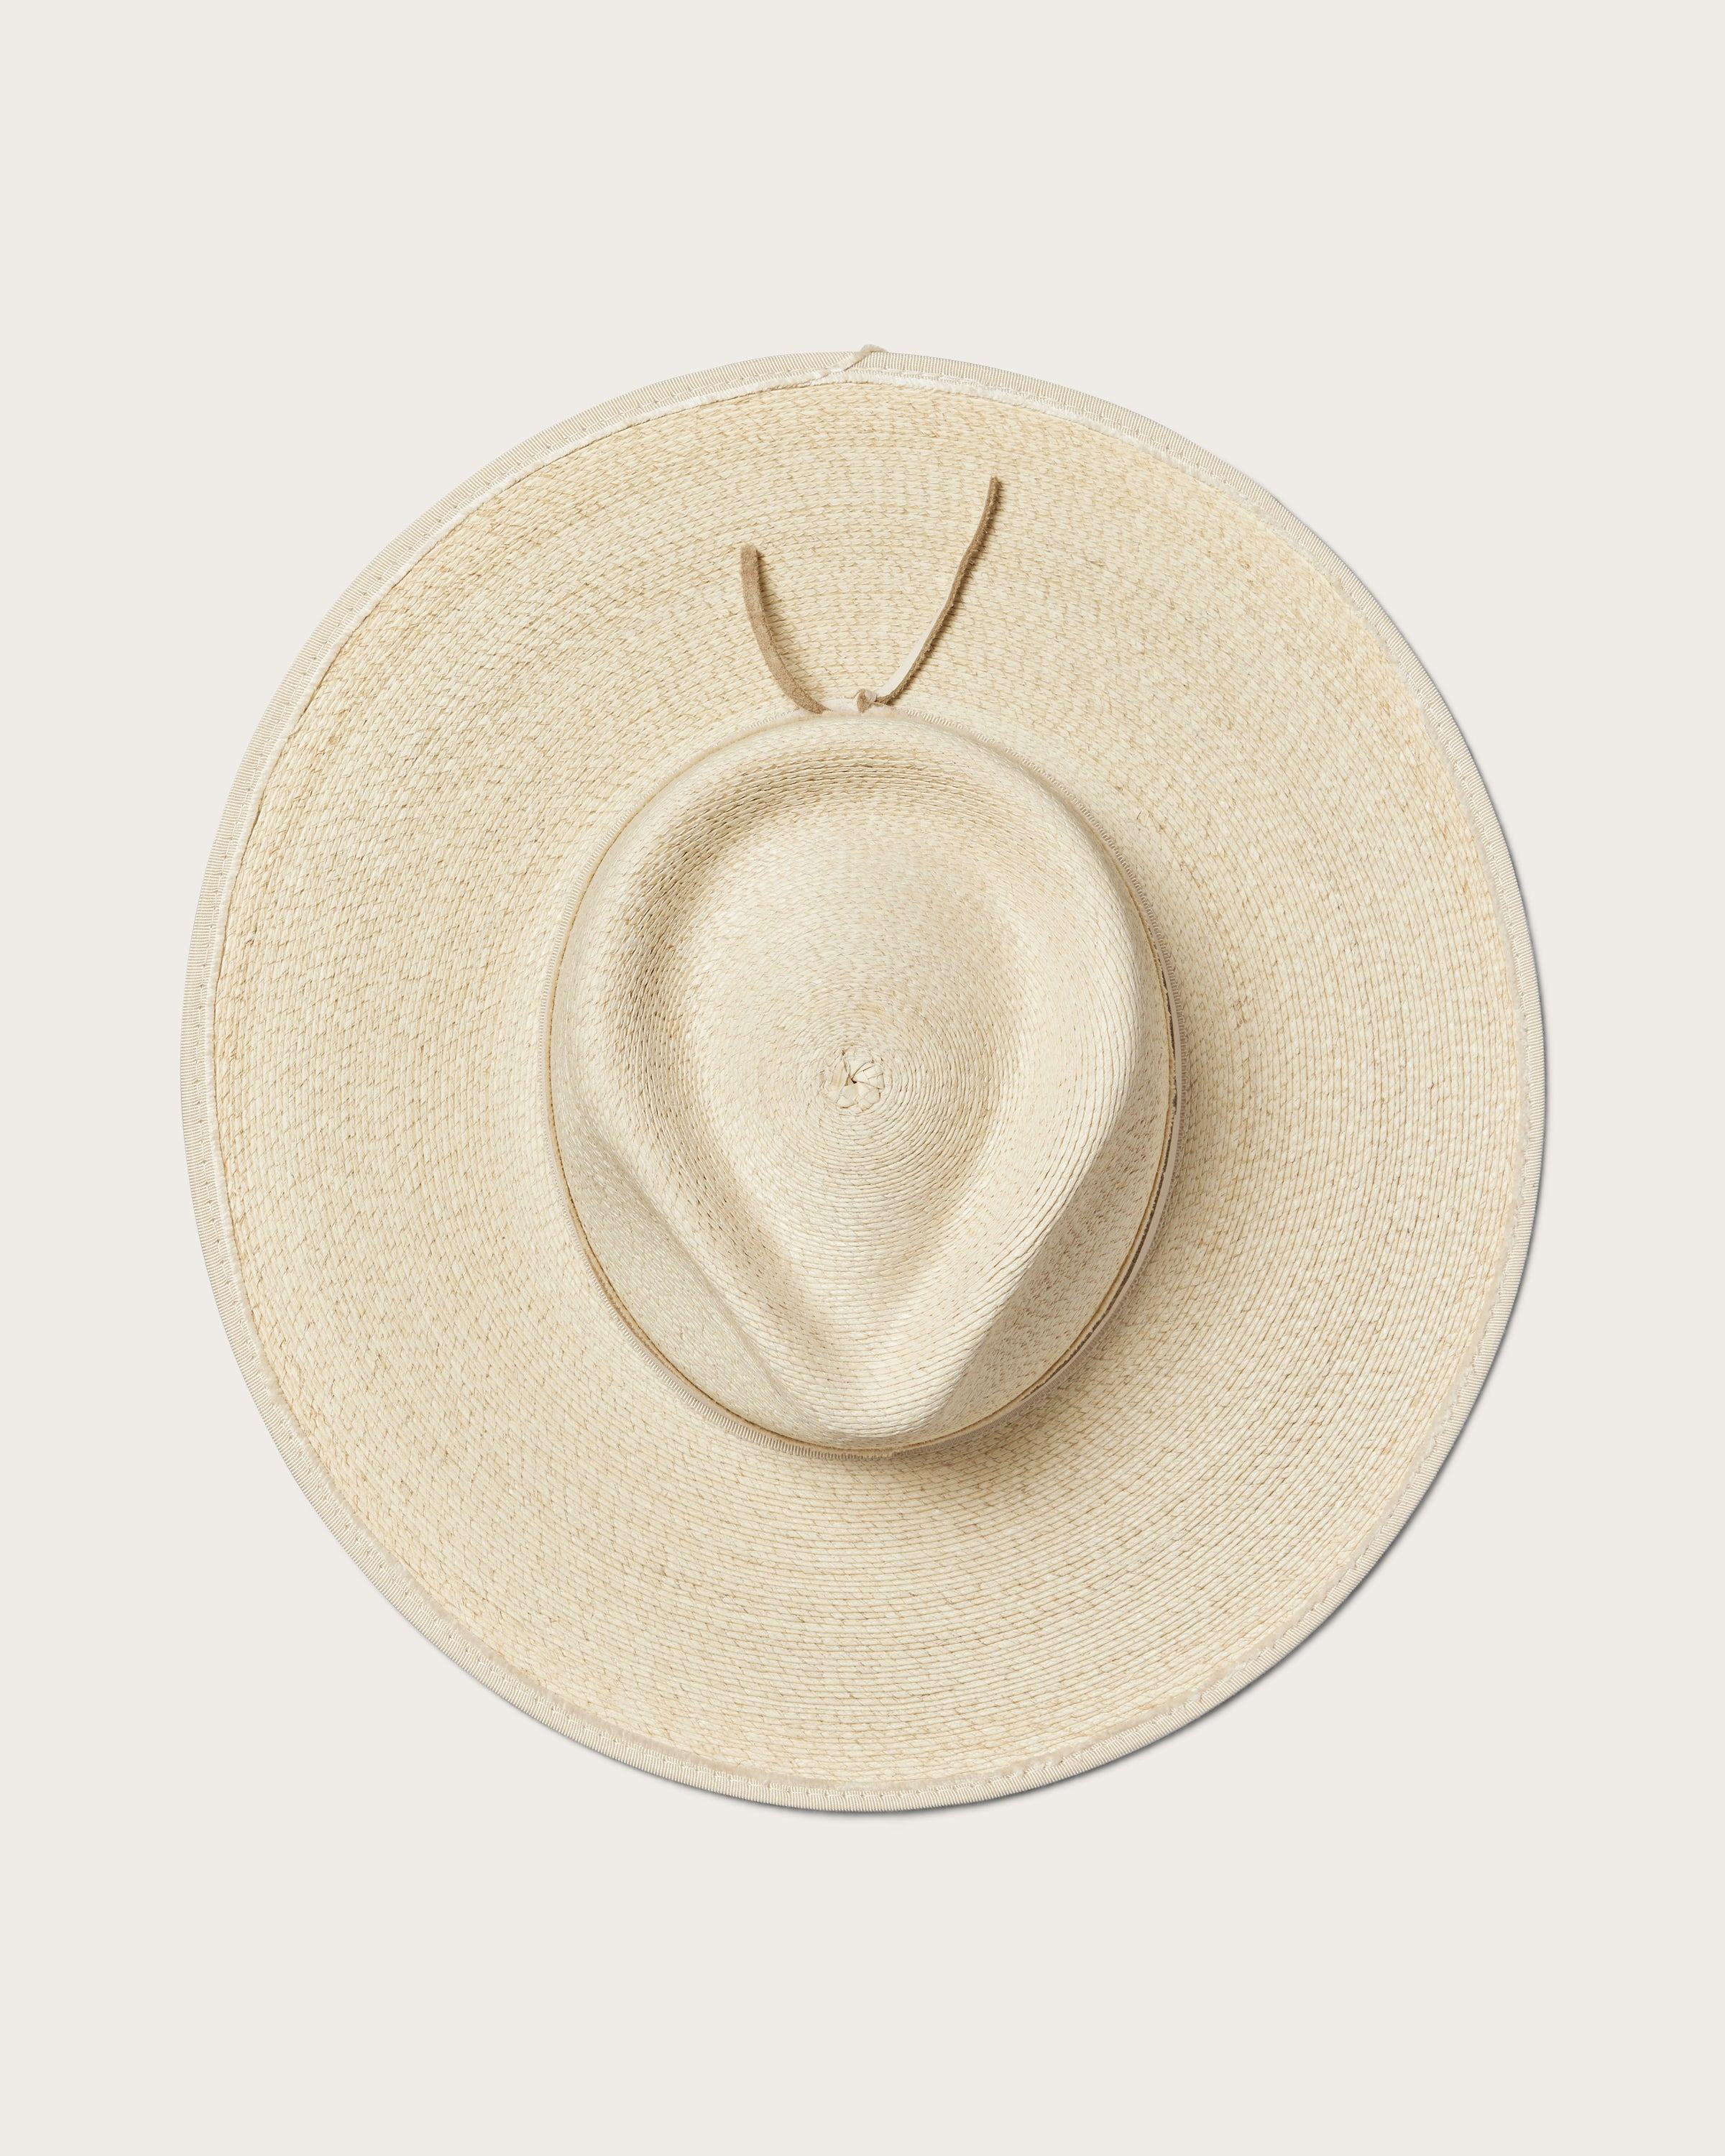 Hemlock Cruz Straw Fedora in Sand color top of hat